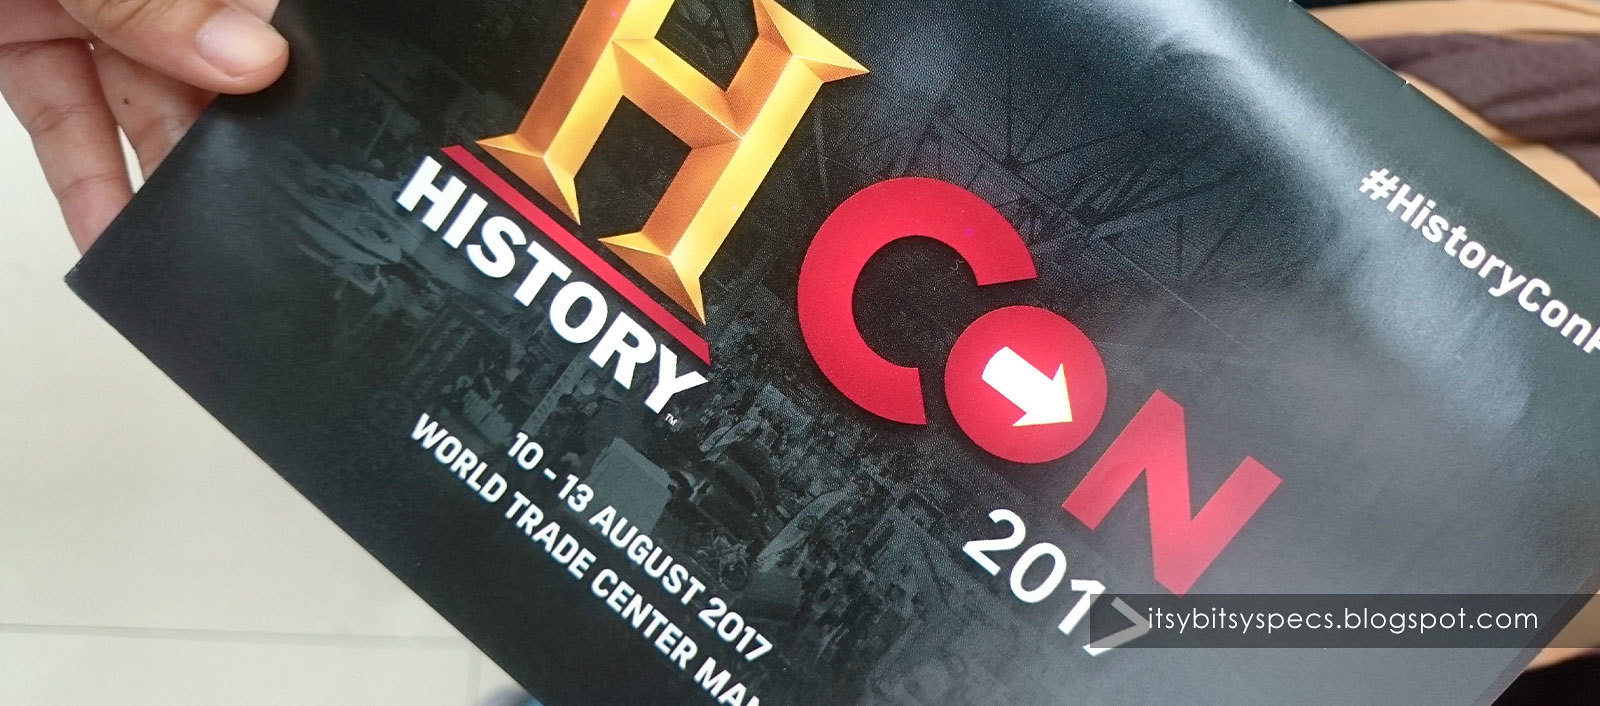 #HistoryCon 2017